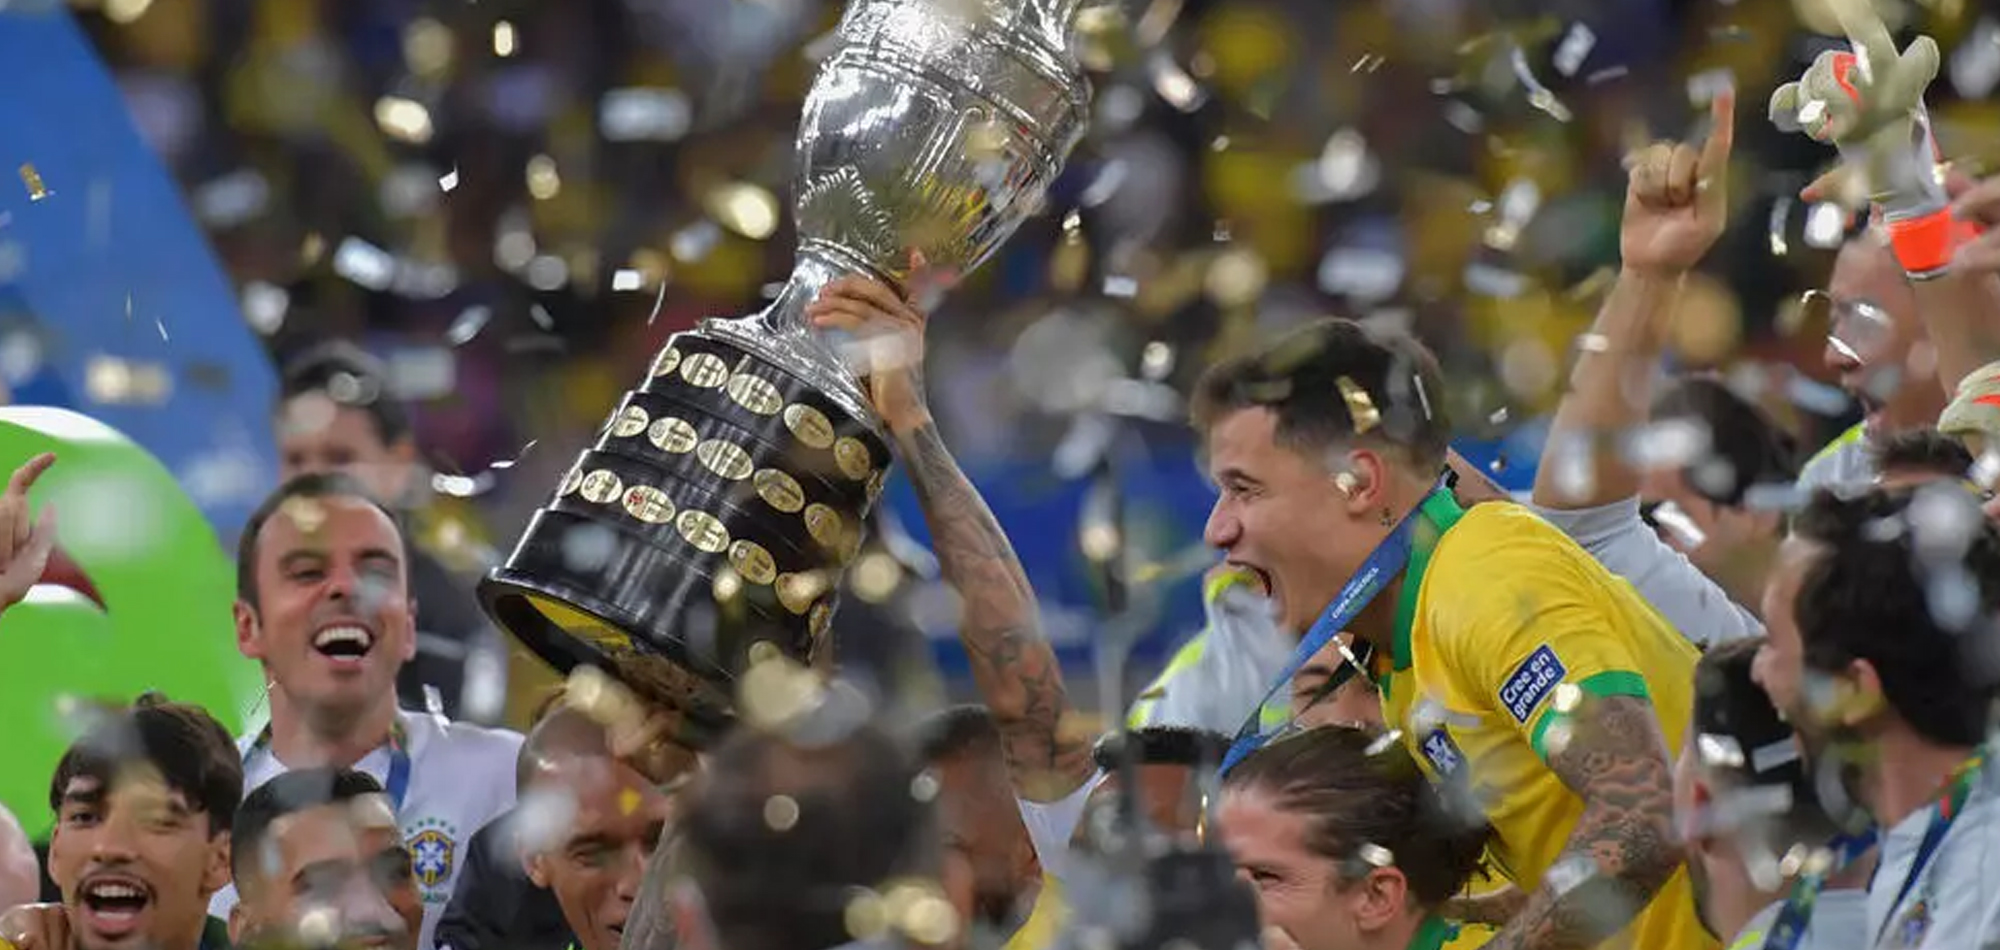 Brazil Supreme Court to decide fate of Copa America